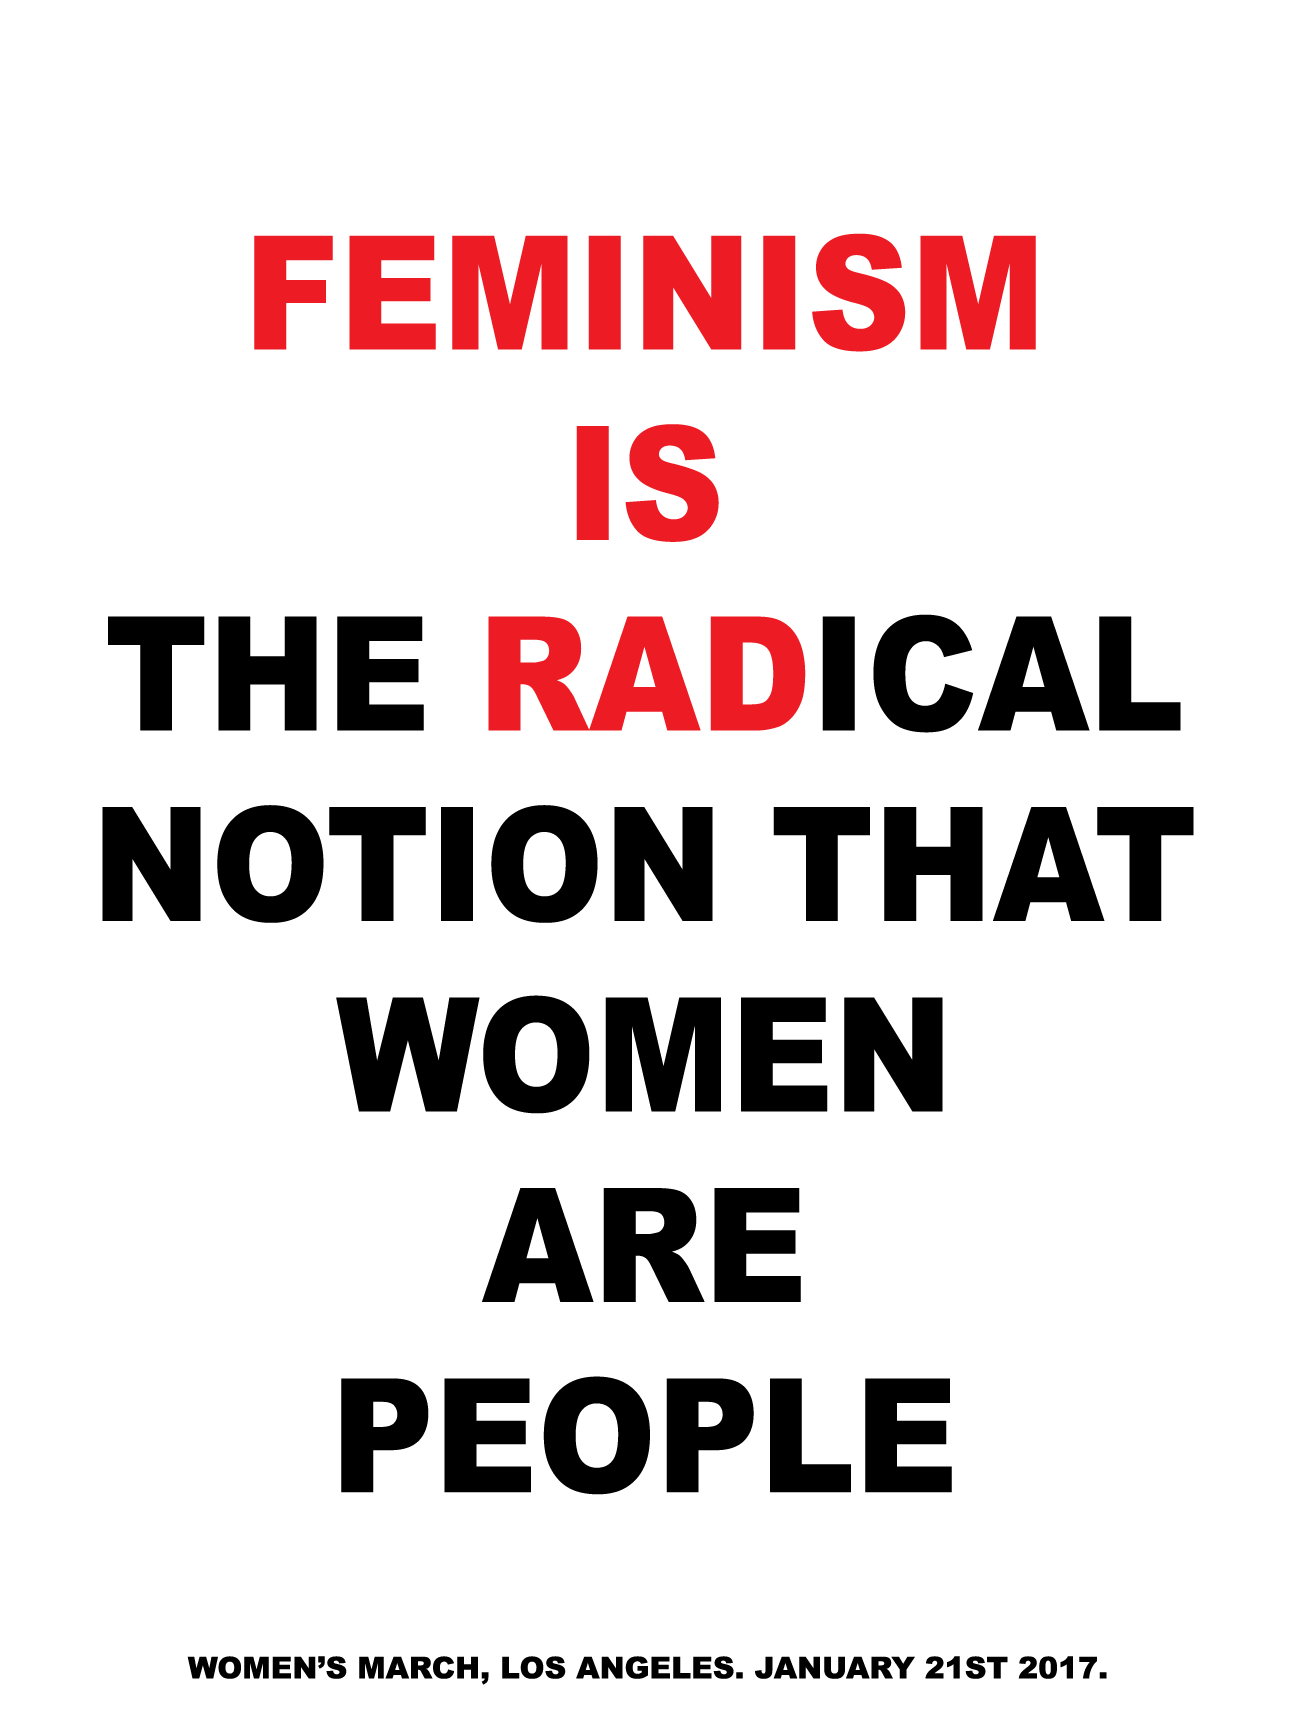 FEMINISM IS RAD